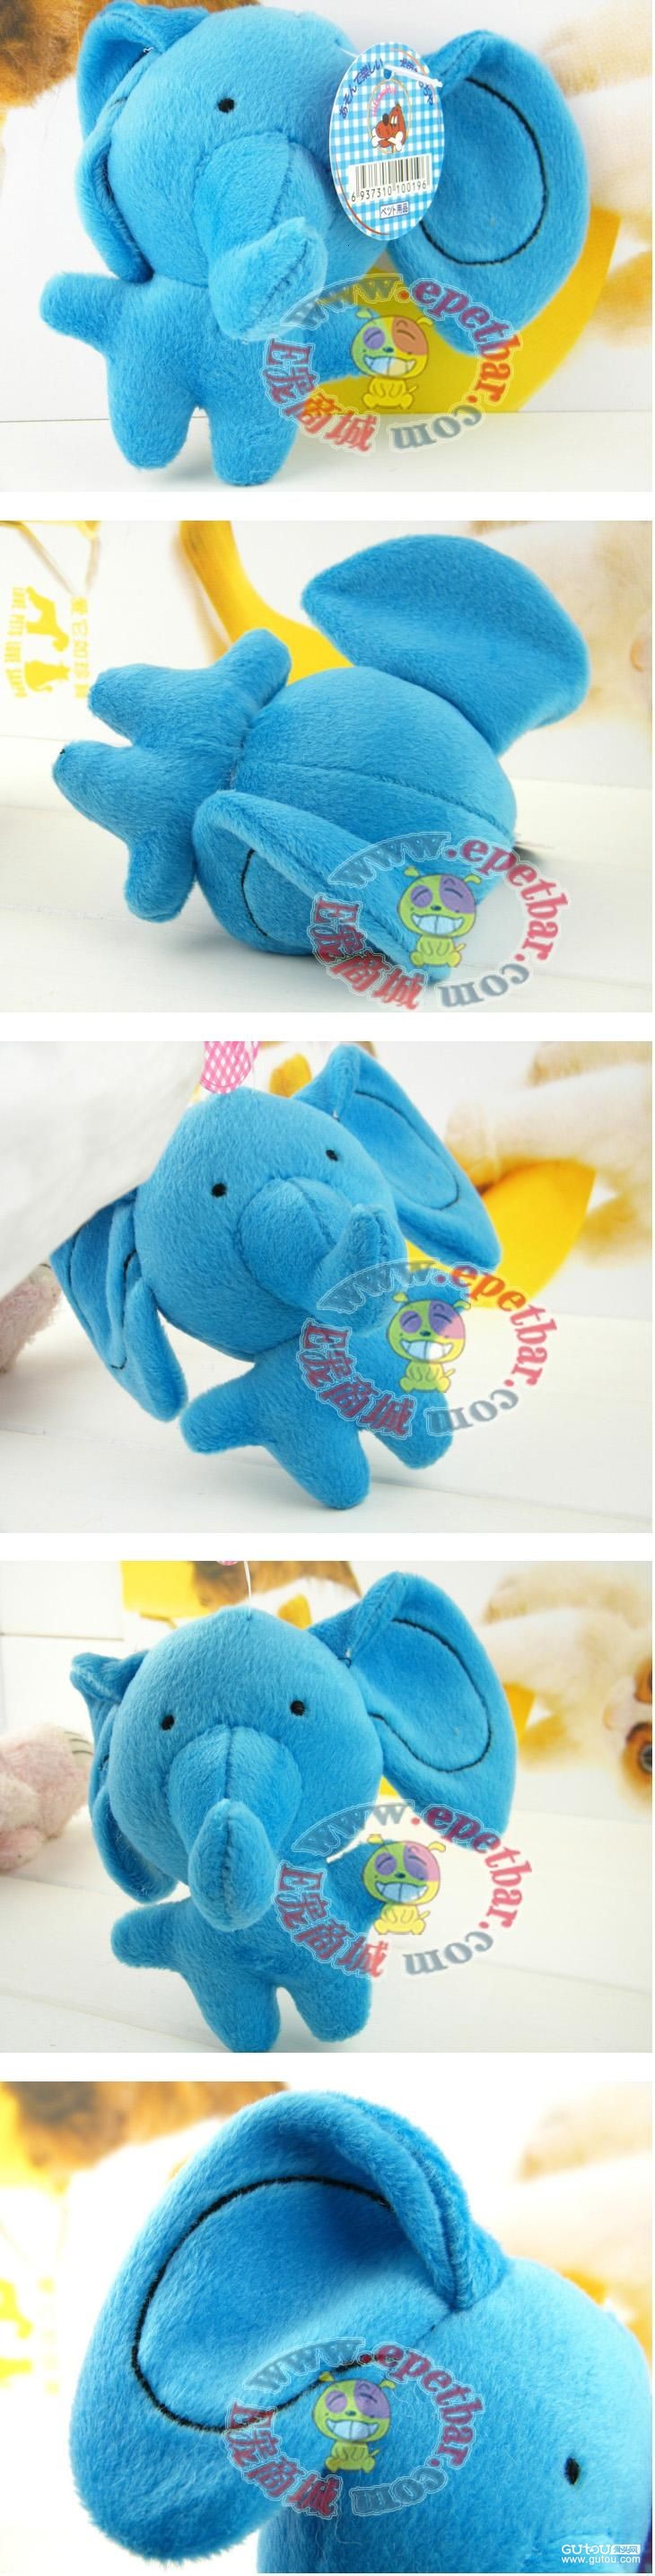 宠物商城狗狗用品网为你的爱宠提供:日本AiBaoPet 棉绒发声宠物玩具——蓝色大象